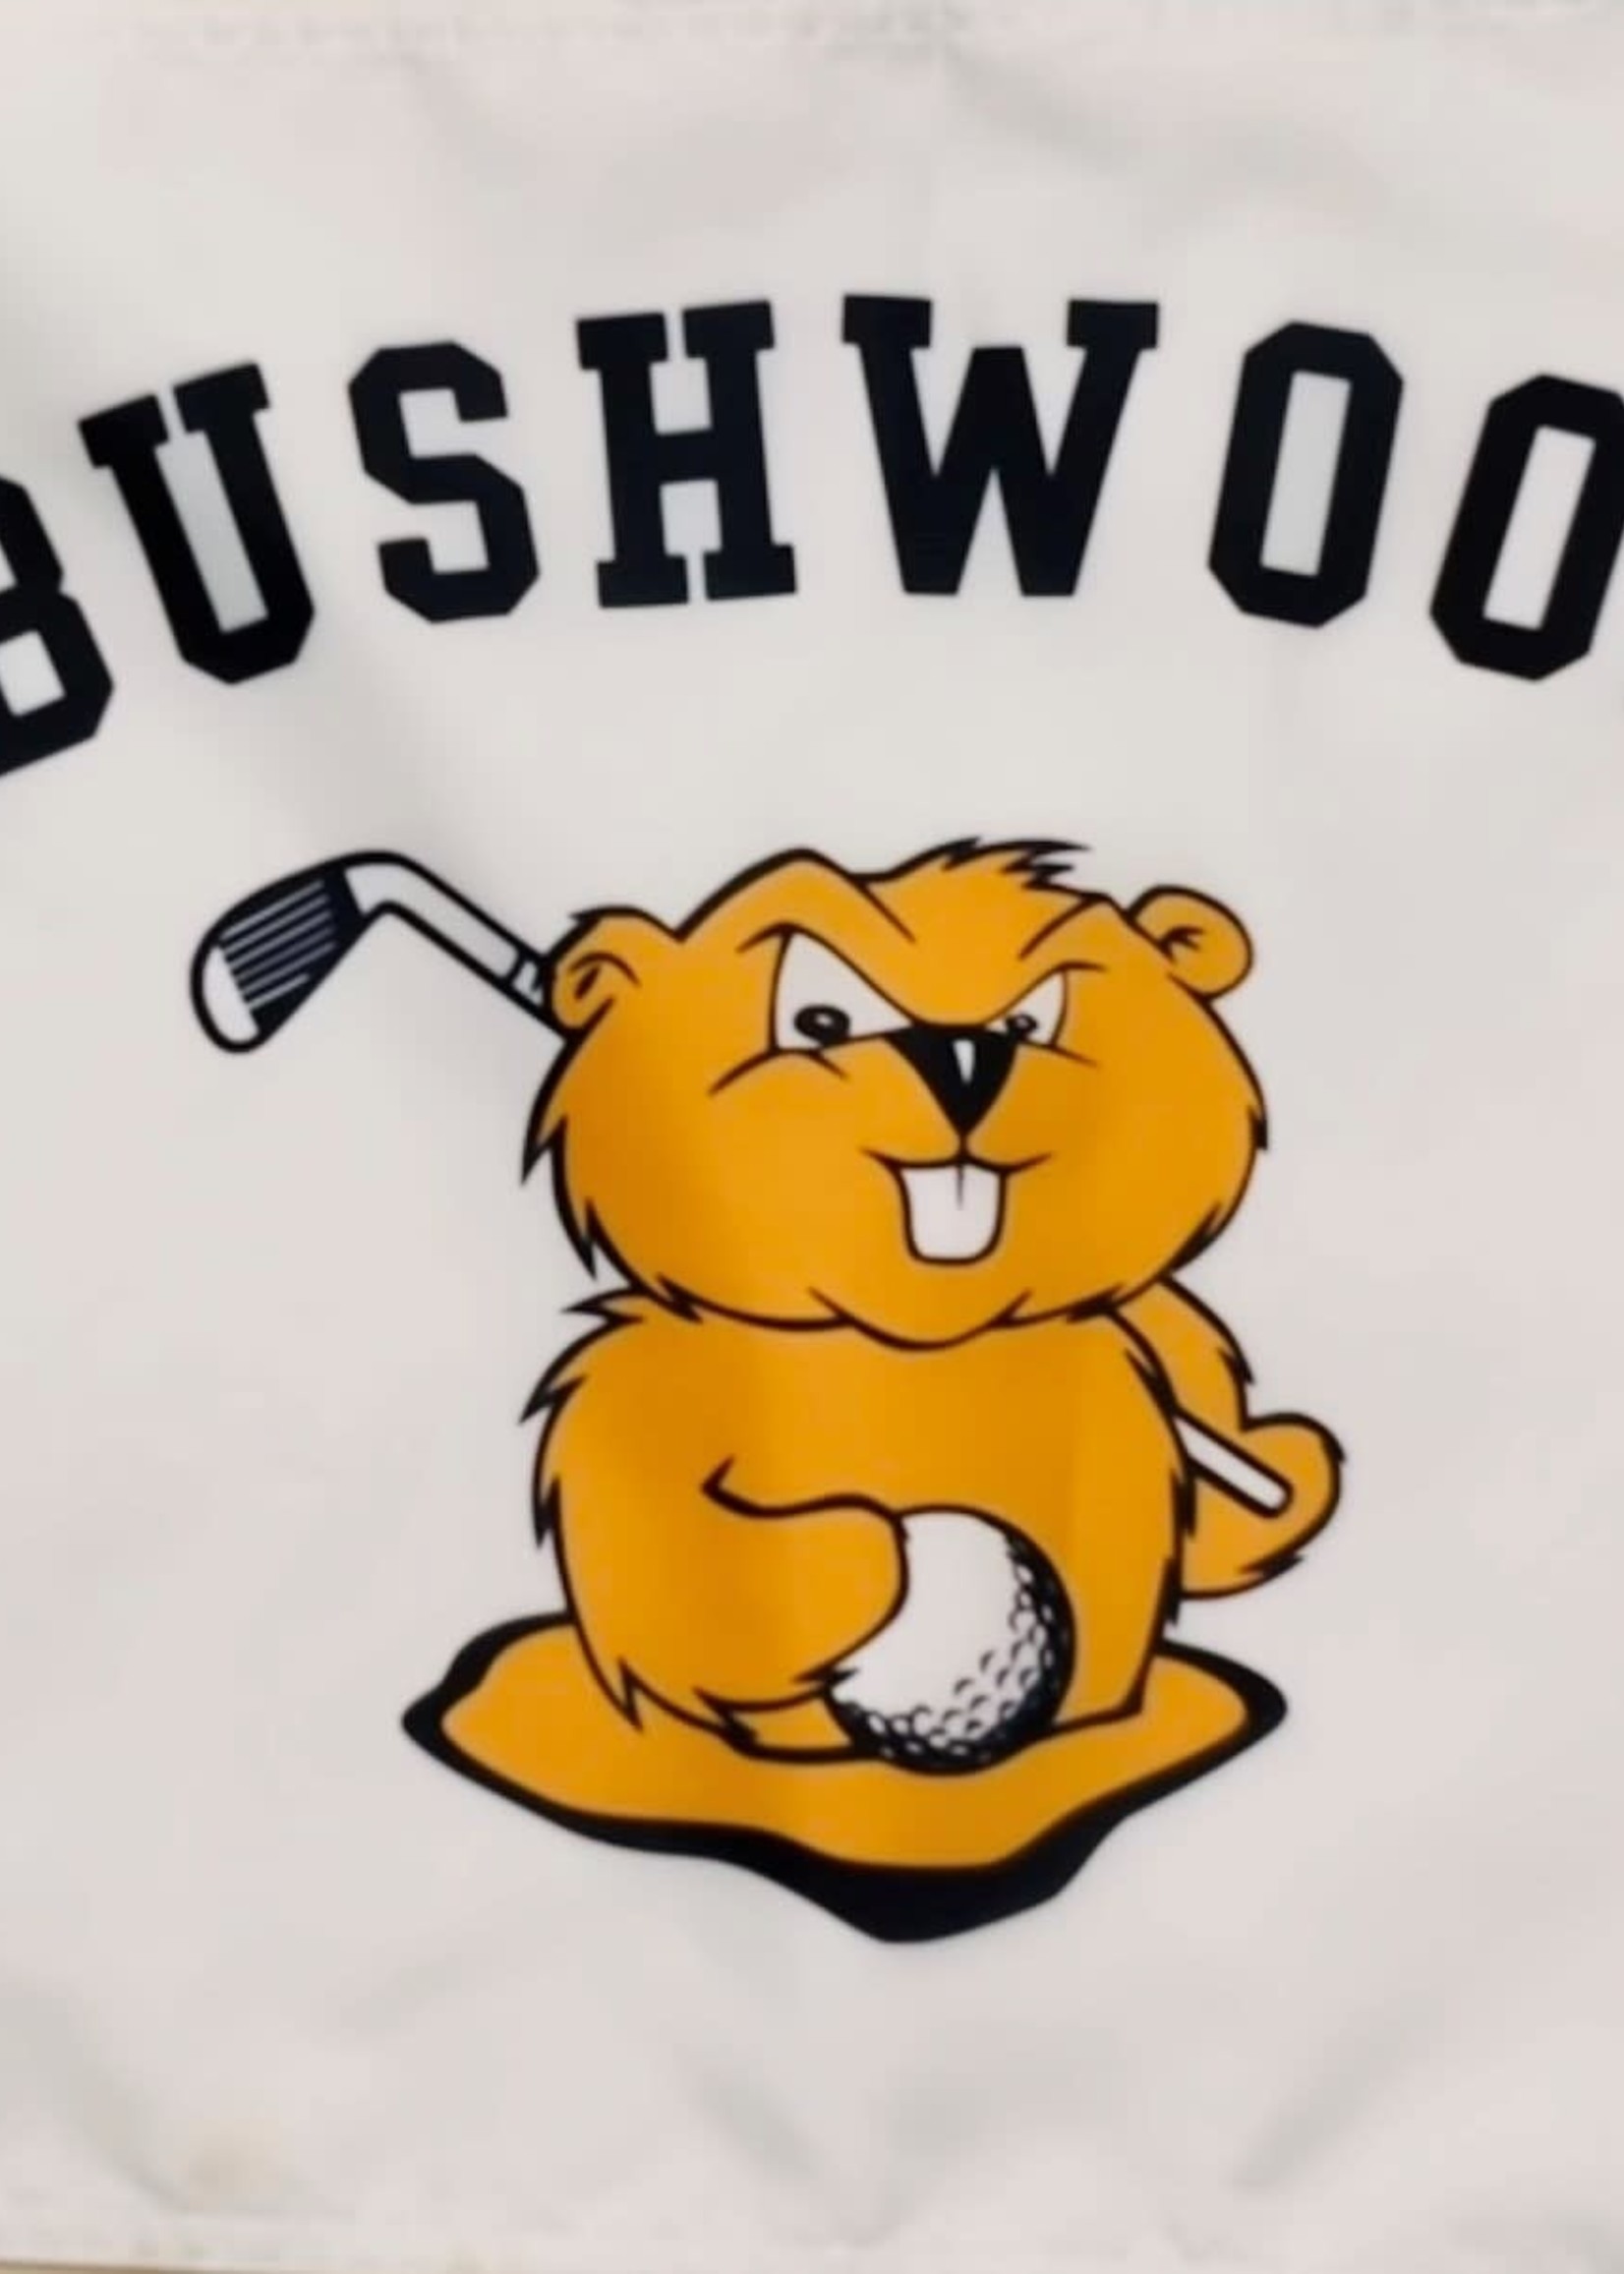 Bushwood Bushwood Flag